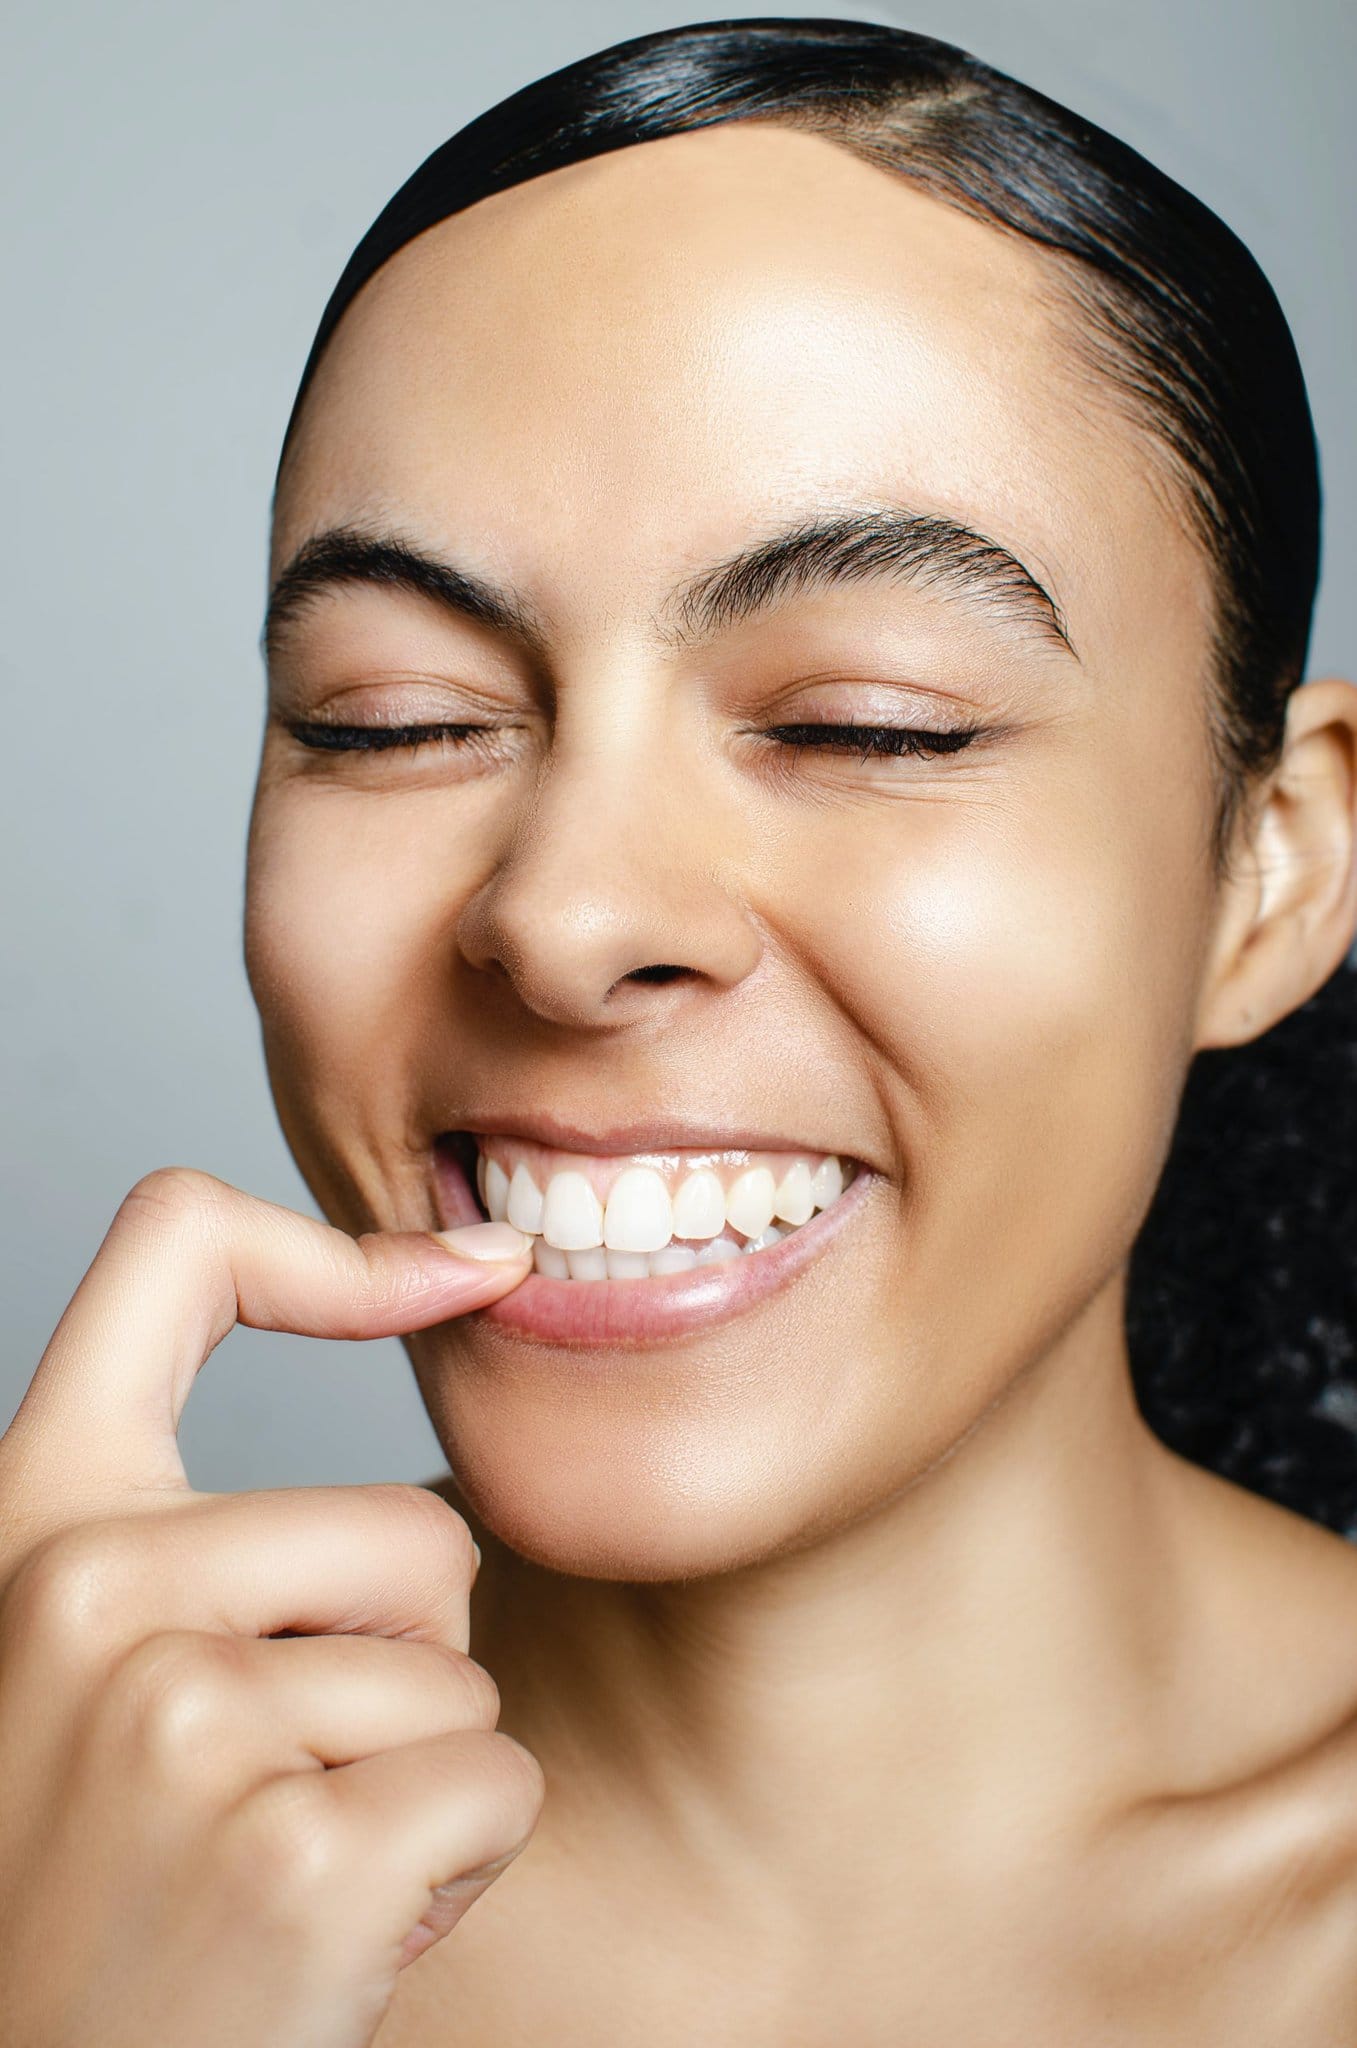 Wie kann ich meinem Leben möglichst viele Jahre gesunde Zähne hinzufügen?